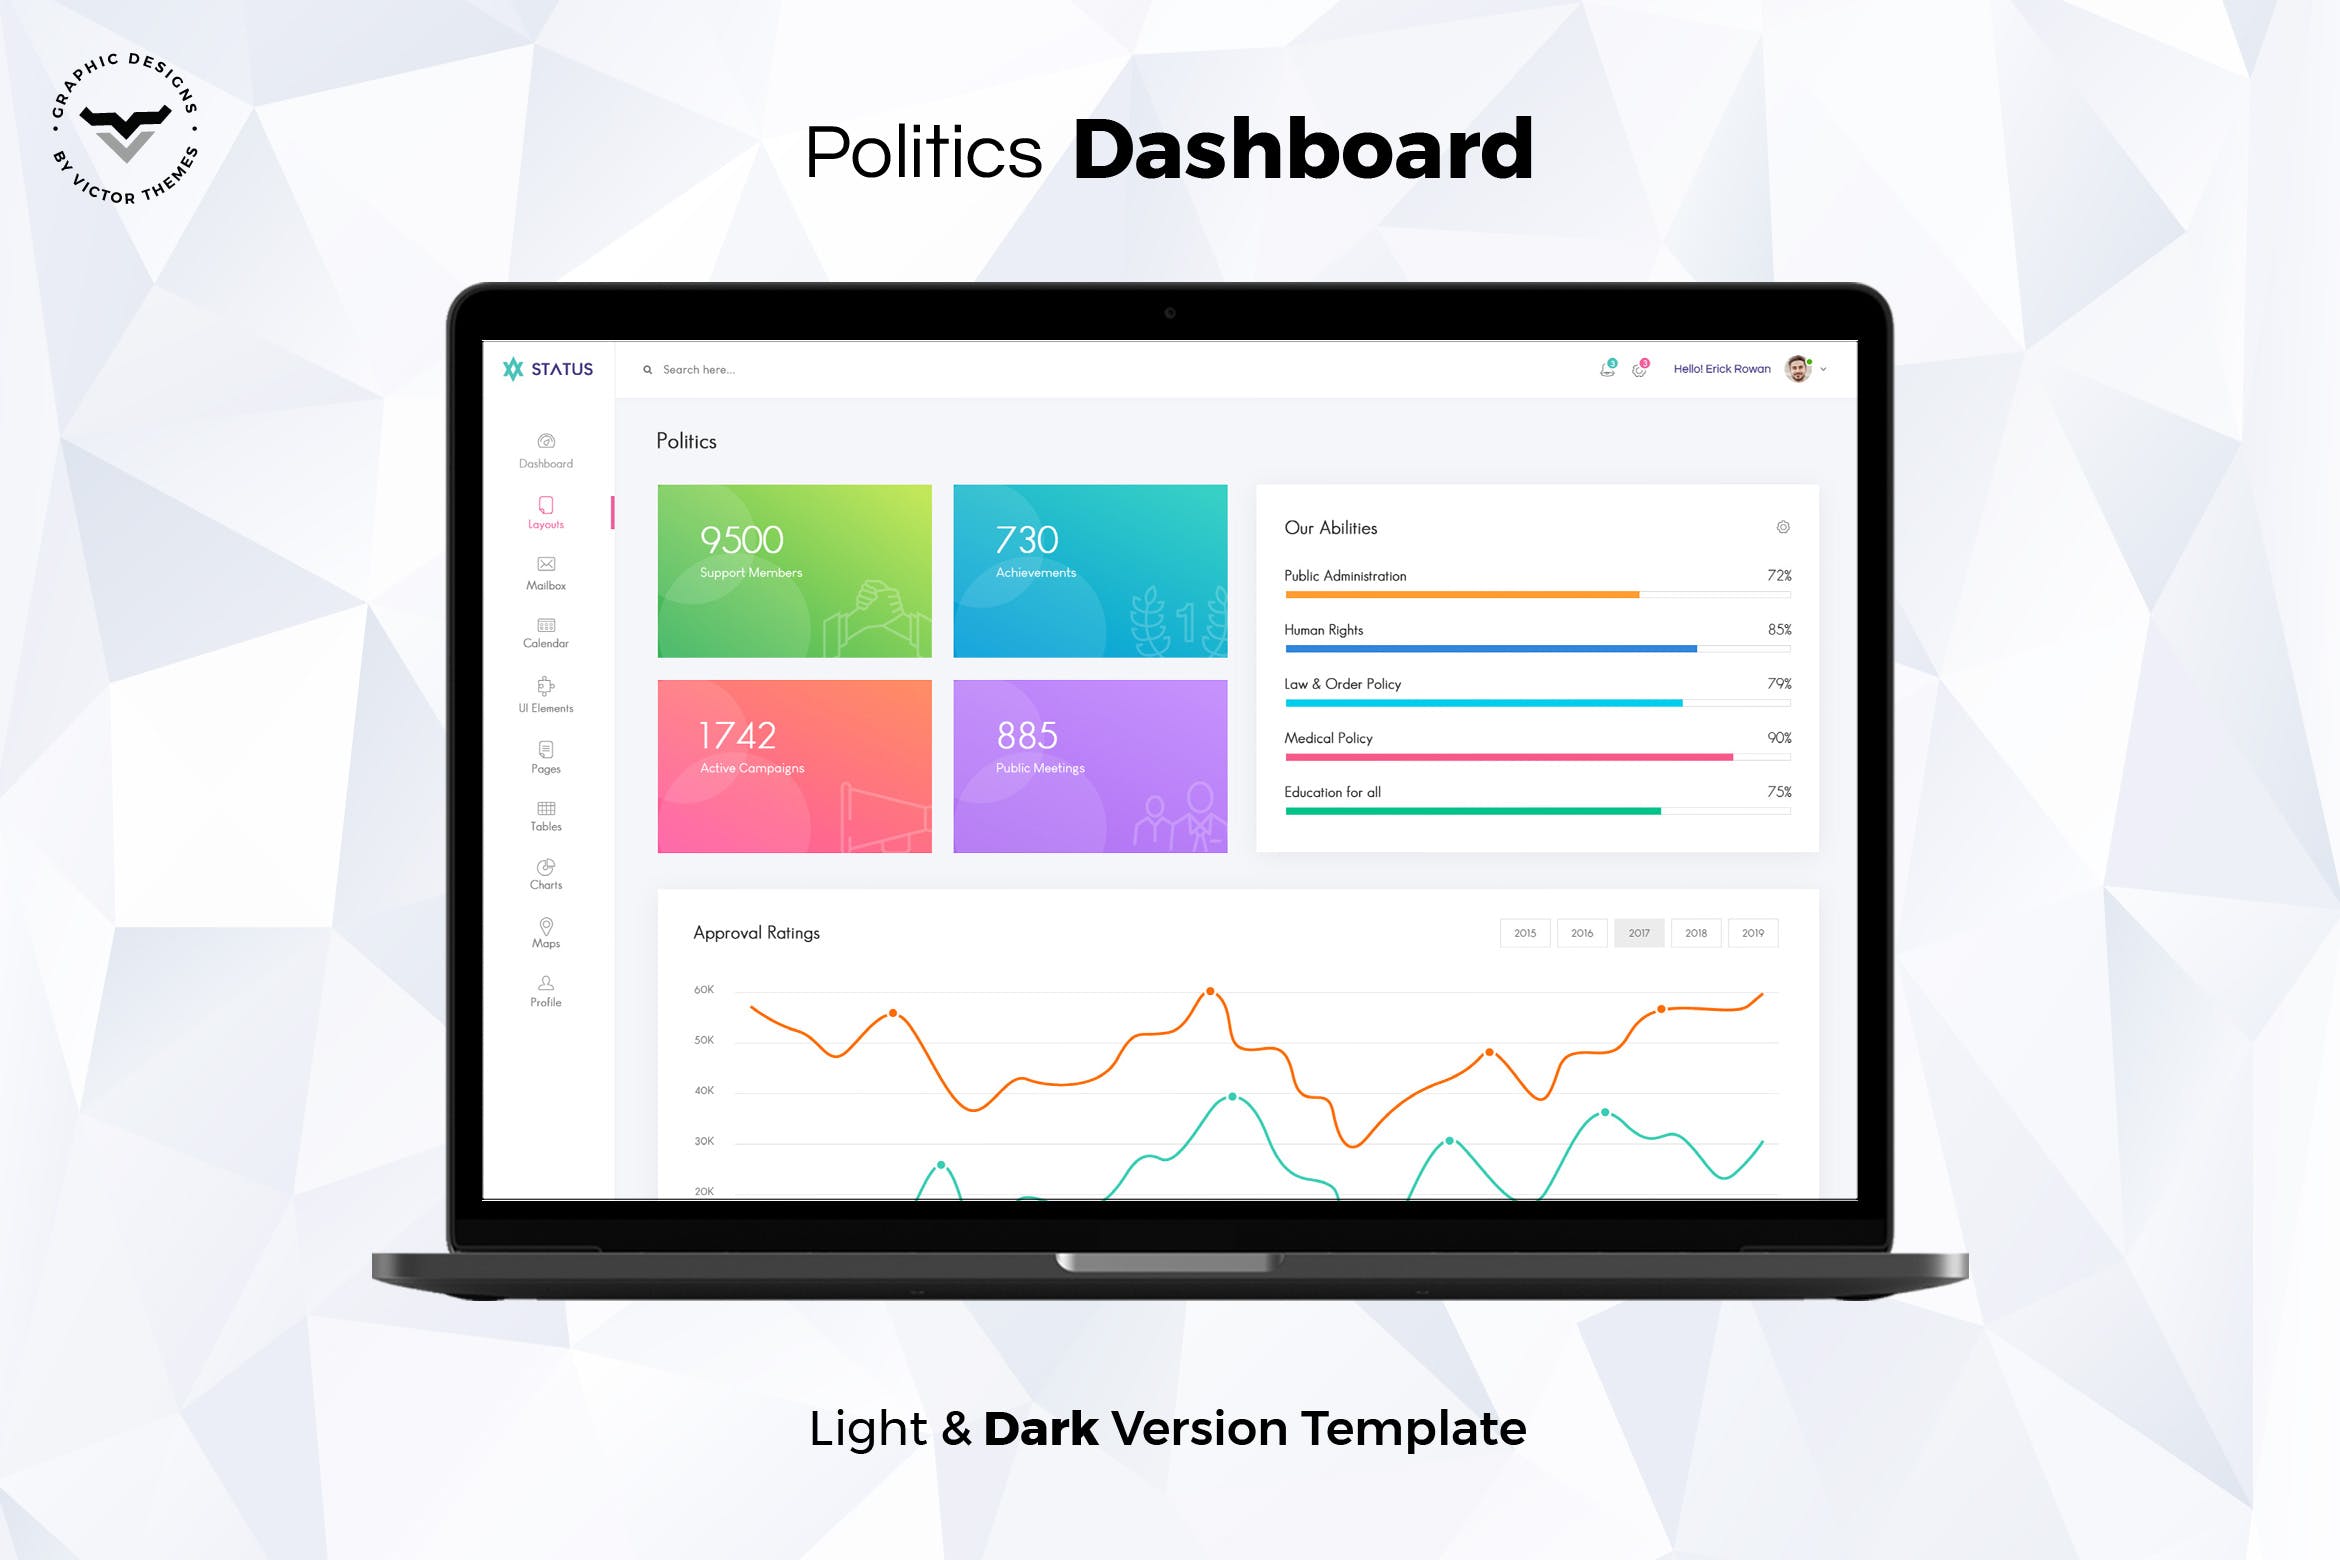 政府部门管理系统后台界面设计素材库精选模板 Politics Admin Dashboard UI Kit插图